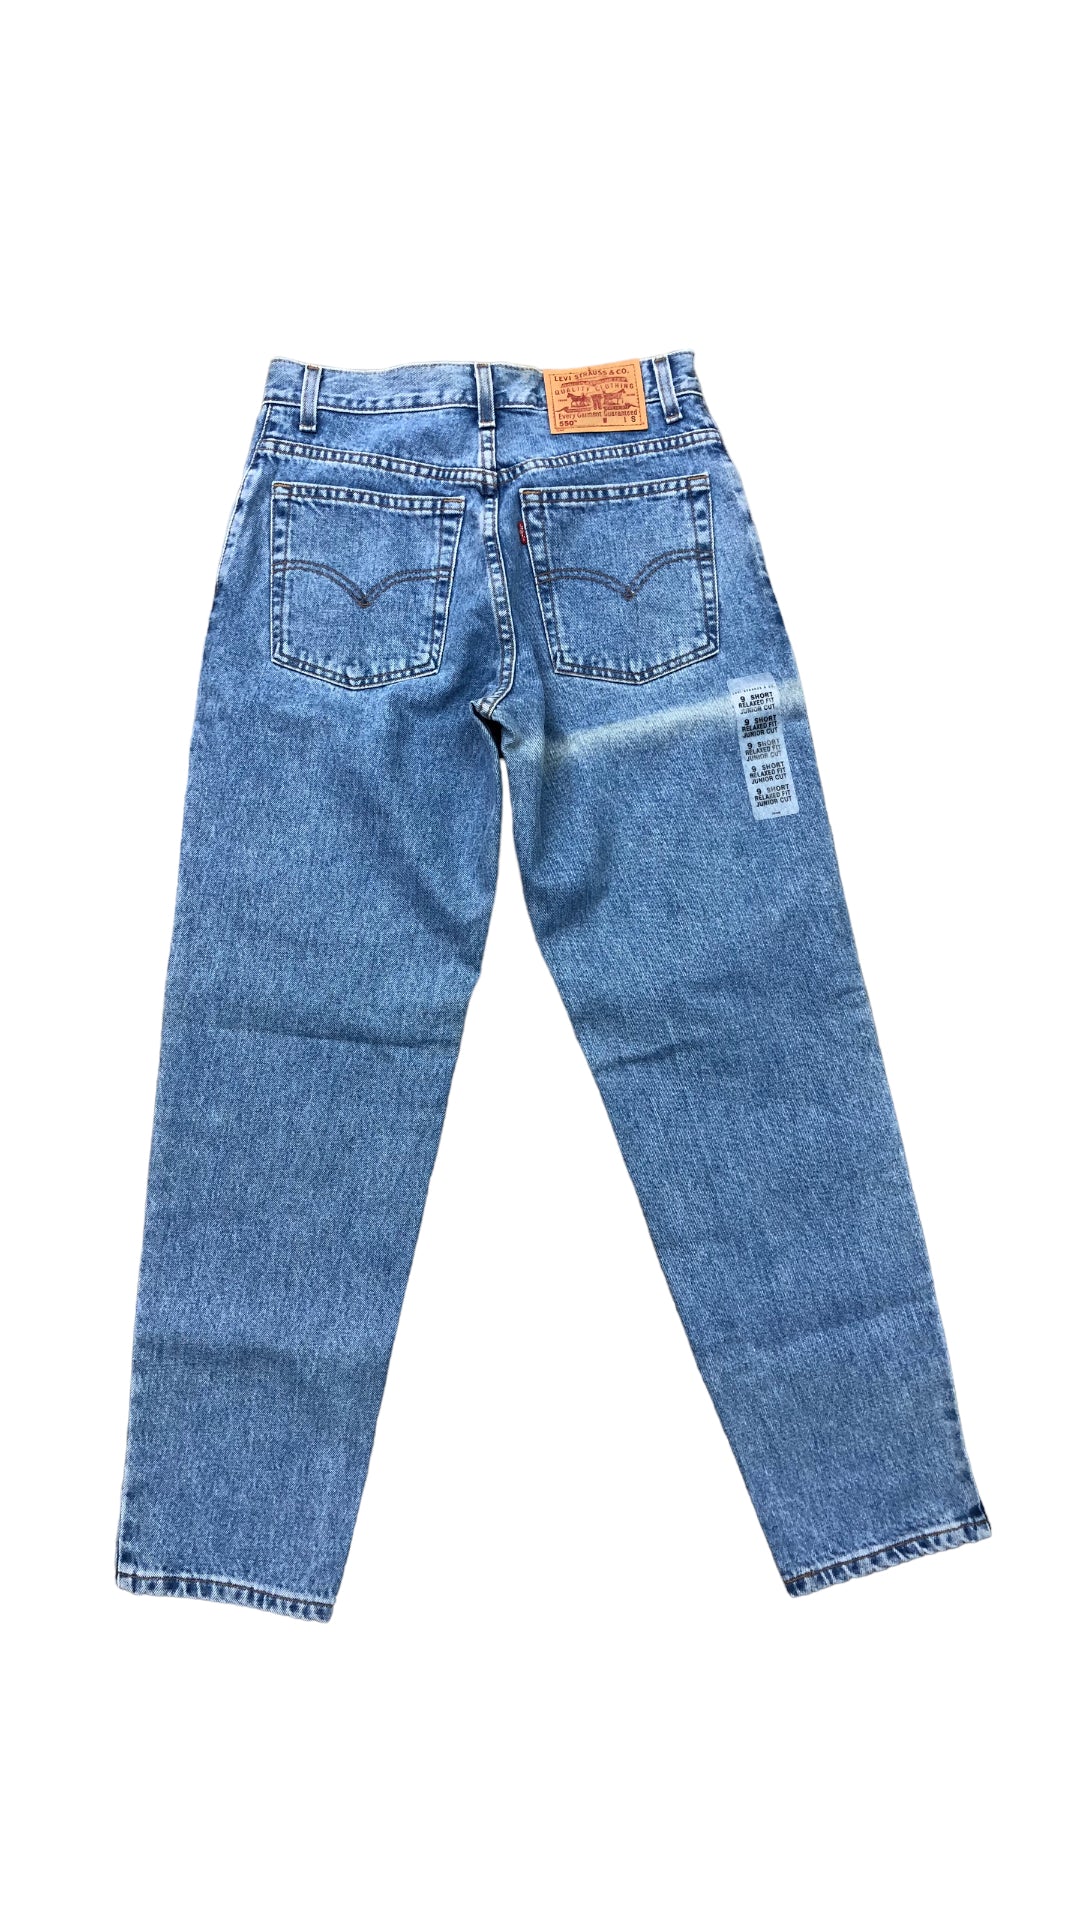 VTG Nos Levi's 550 Blue Jeans Sz 30x29